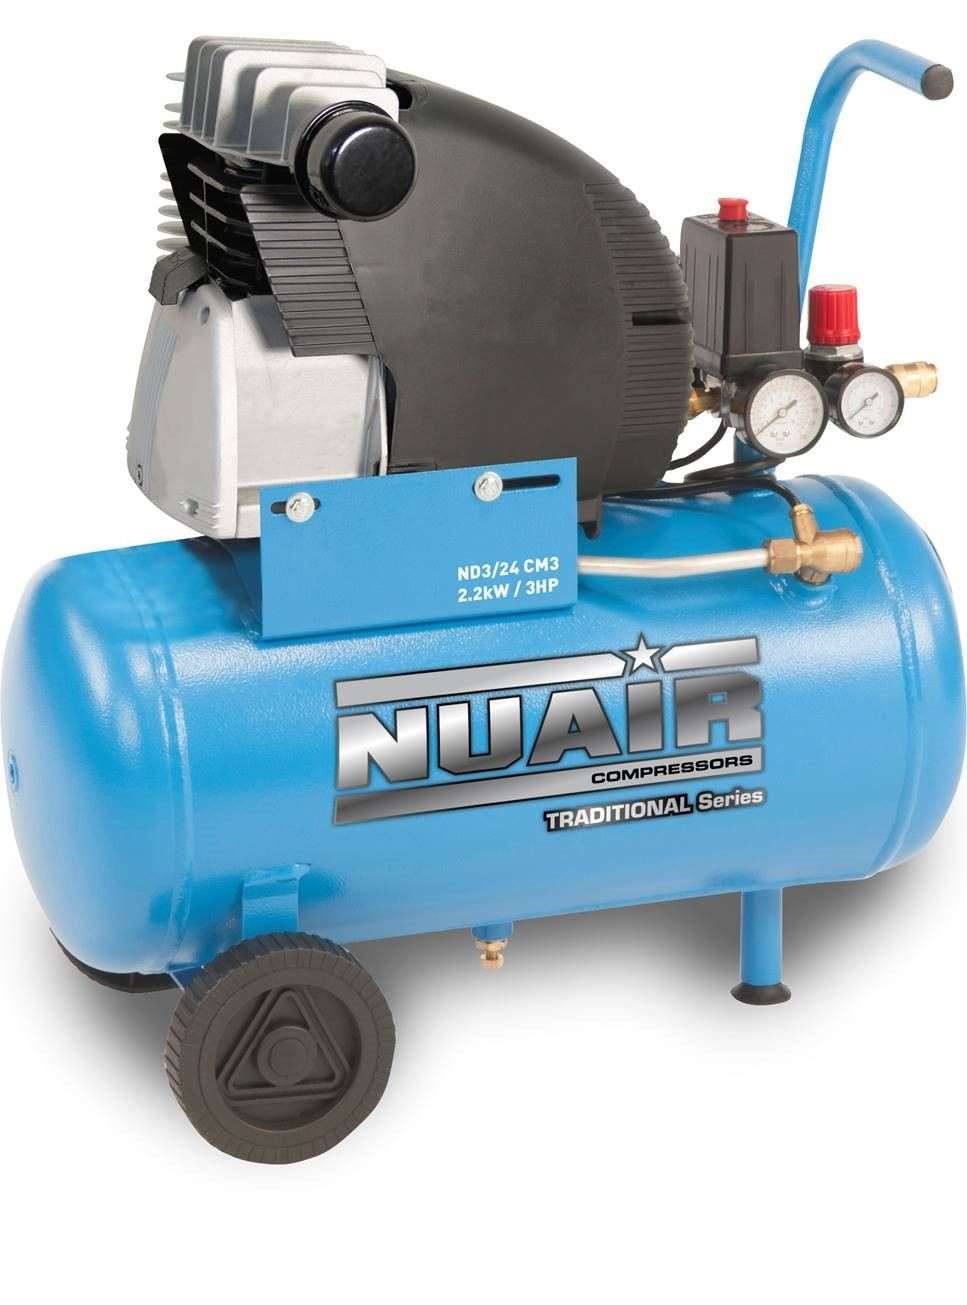 Nuair S -1NCC504FPS564 24升直接驱动ND3/24 cm3-3 HP 8 BAR 230V